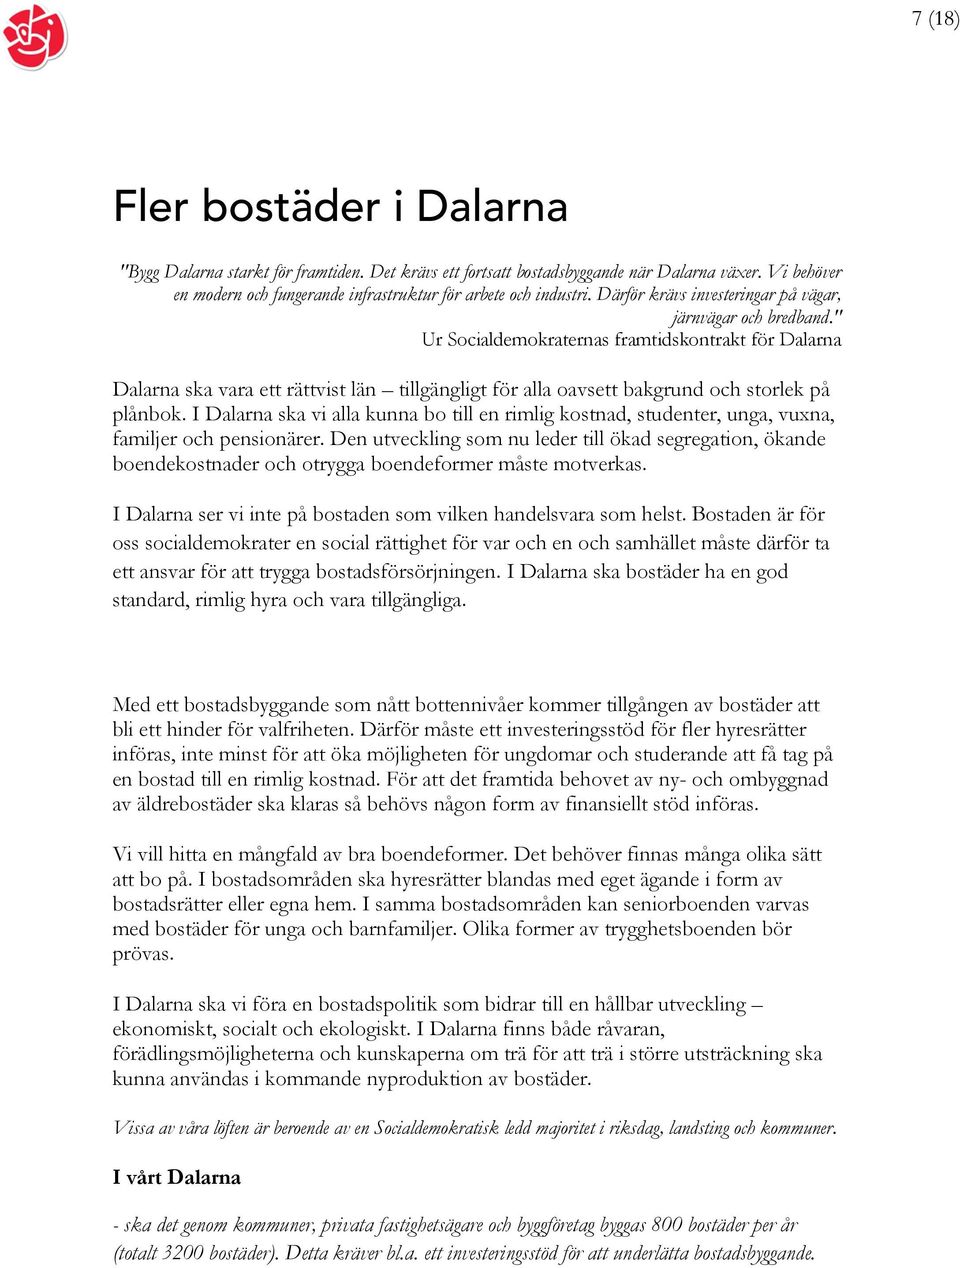 " Ur Socialdemokraternas framtidskontrakt för Dalarna Dalarna ska vara ett rättvist län tillgängligt för alla oavsett bakgrund och storlek på plånbok.